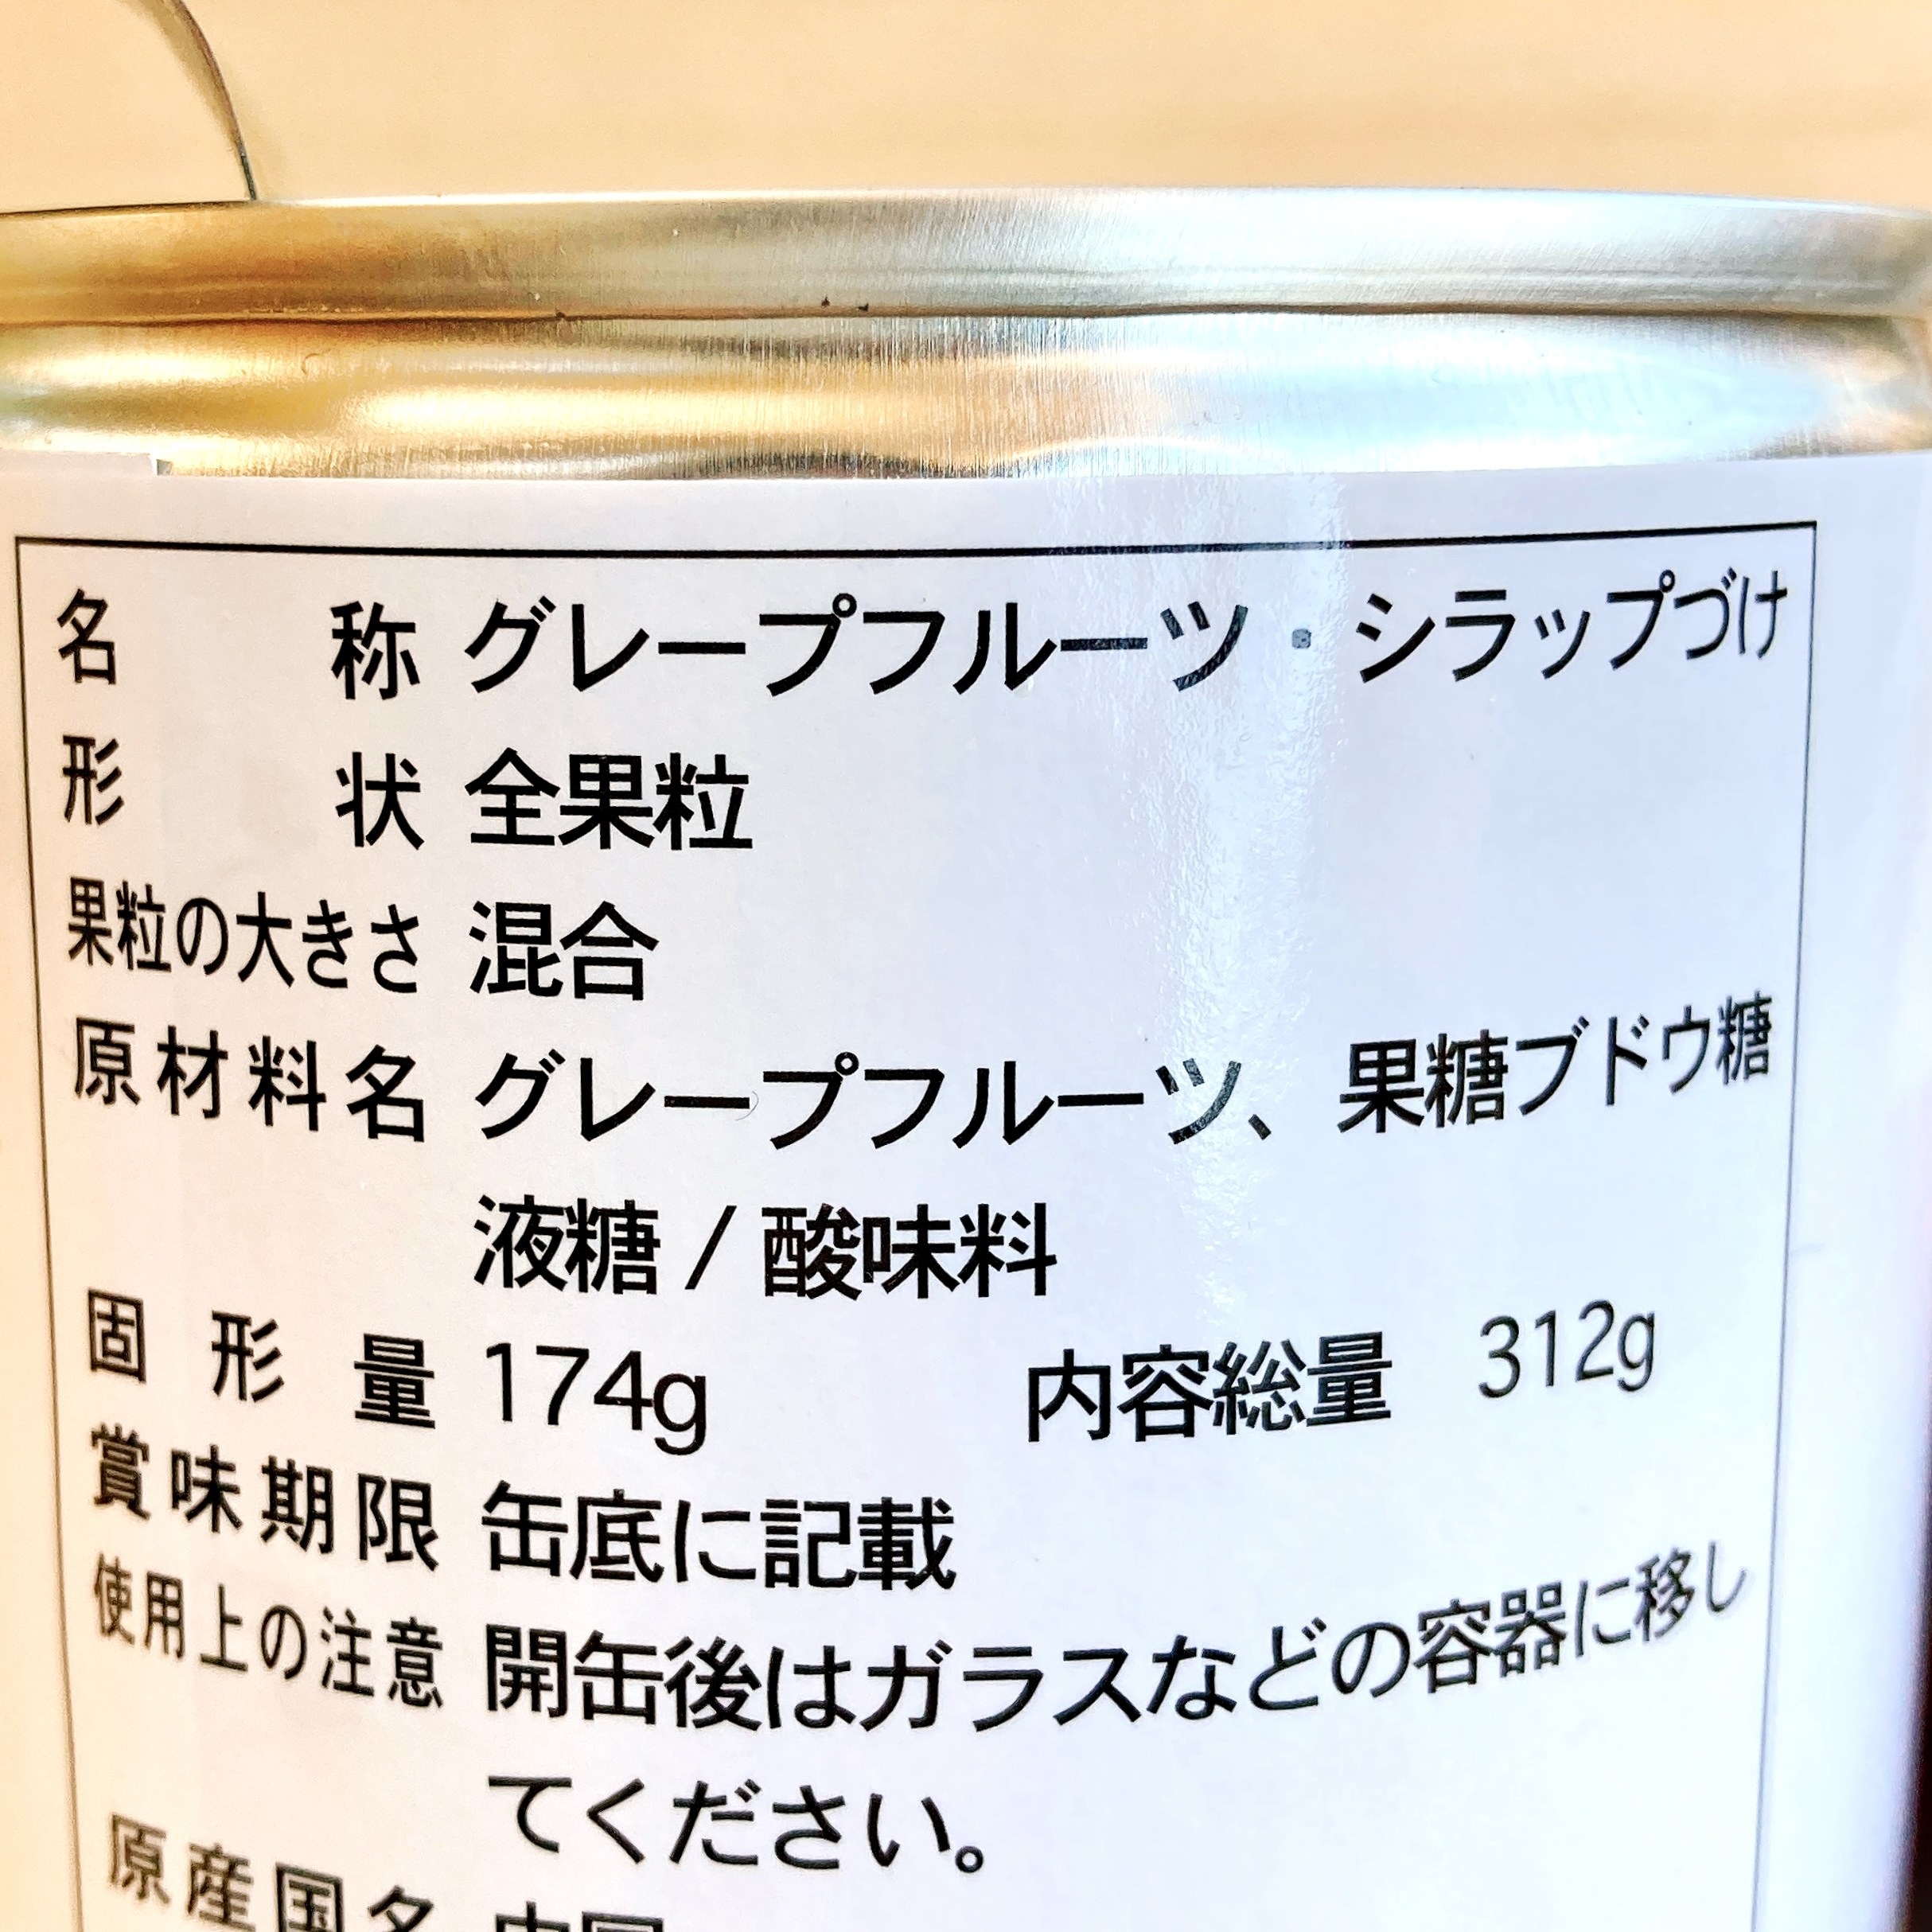 ドン・キホーテのおすすめ缶詰「ホワイトグレープフルーツの缶詰」